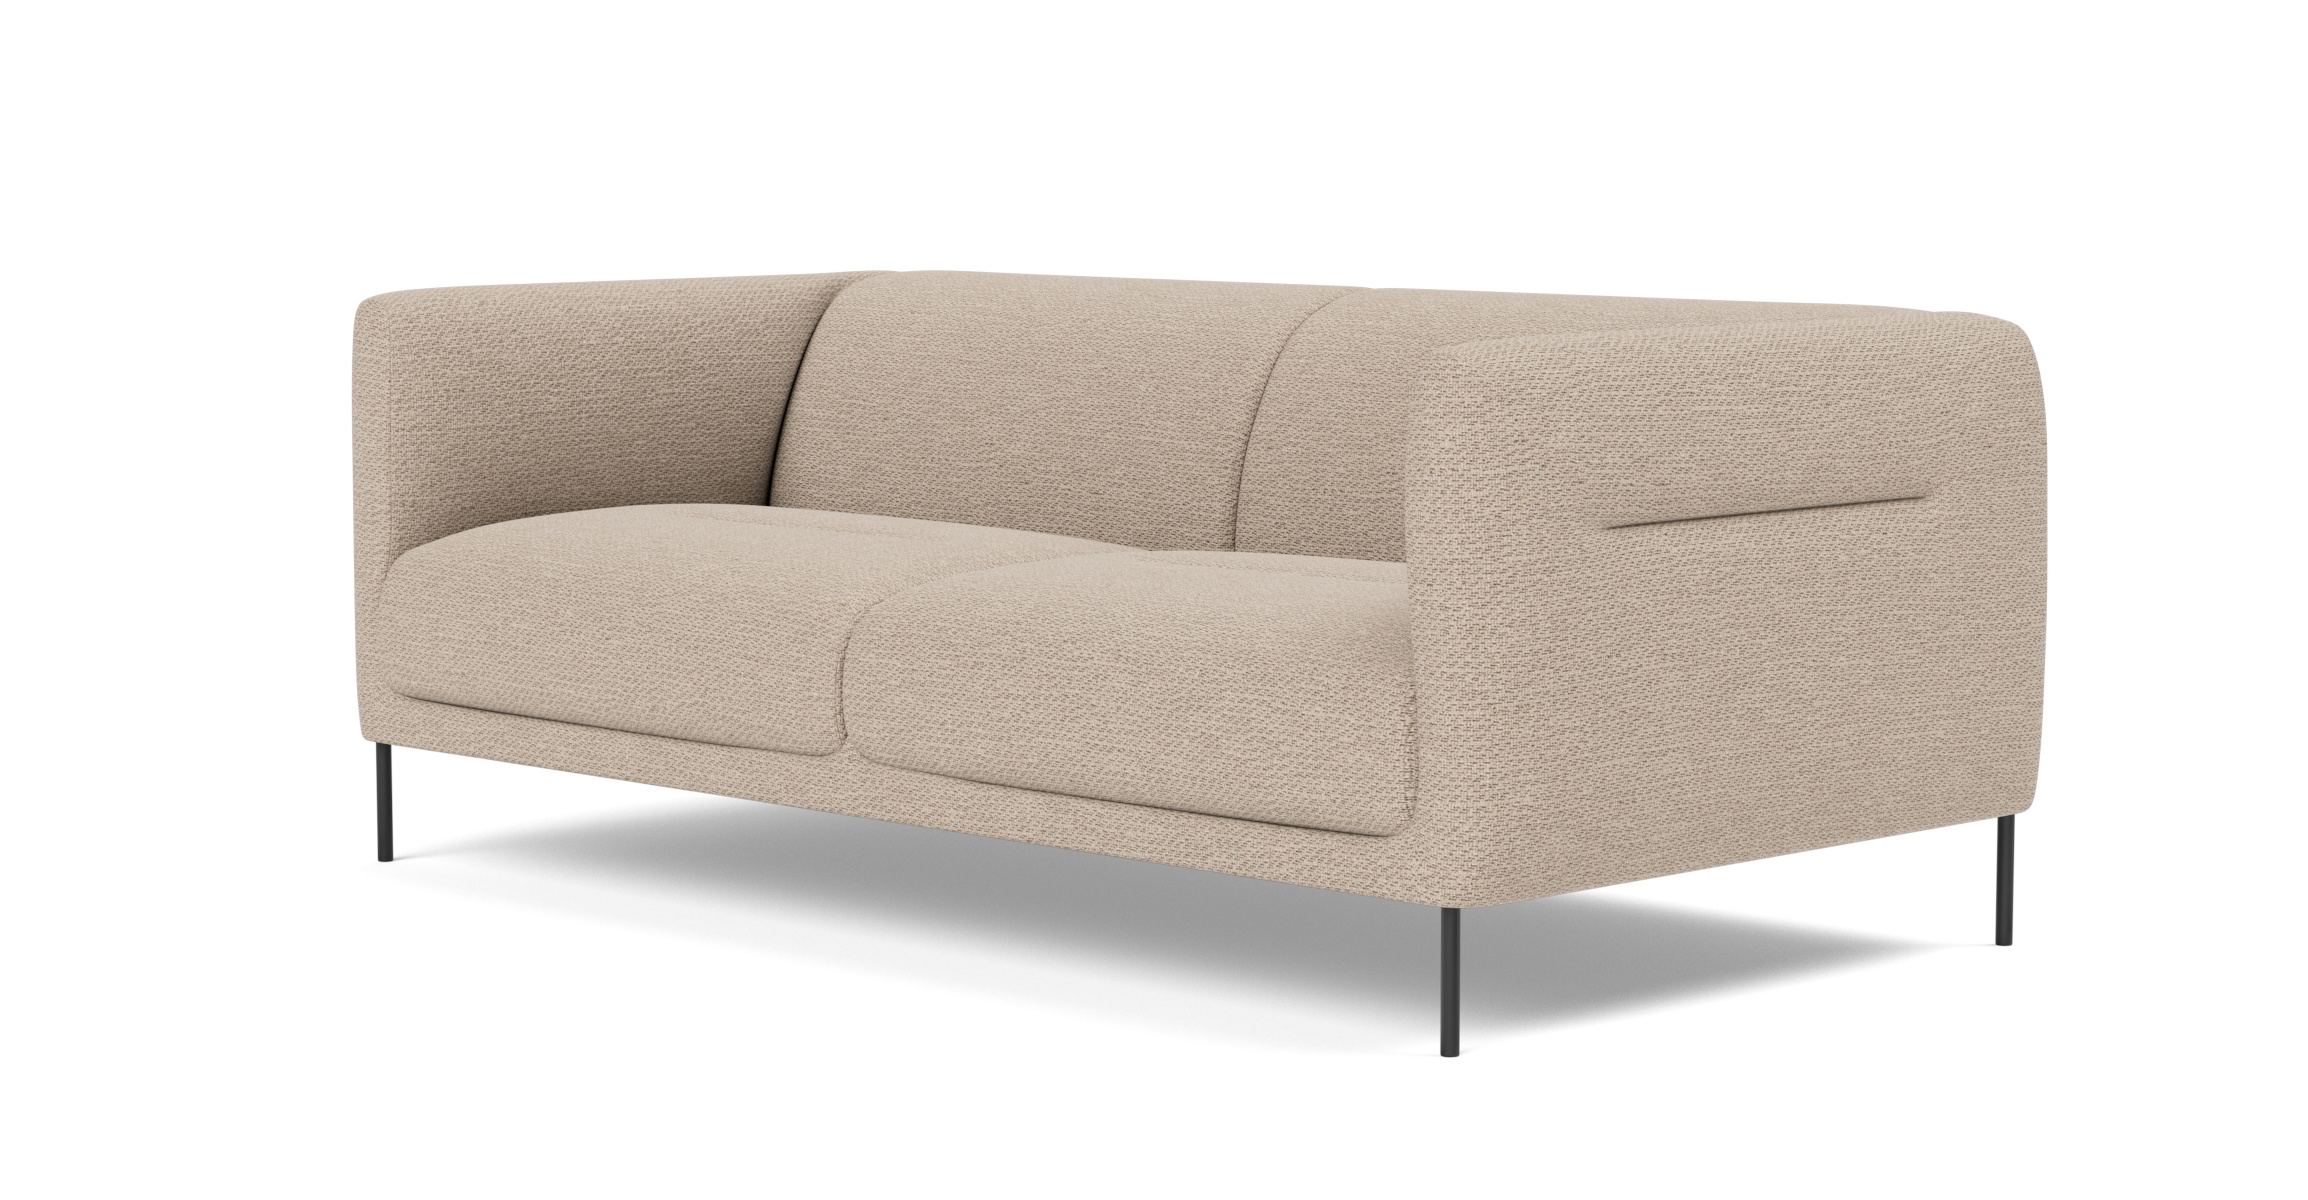 Konami Sofa 2-Sitzer, schwarz / sisu 0105